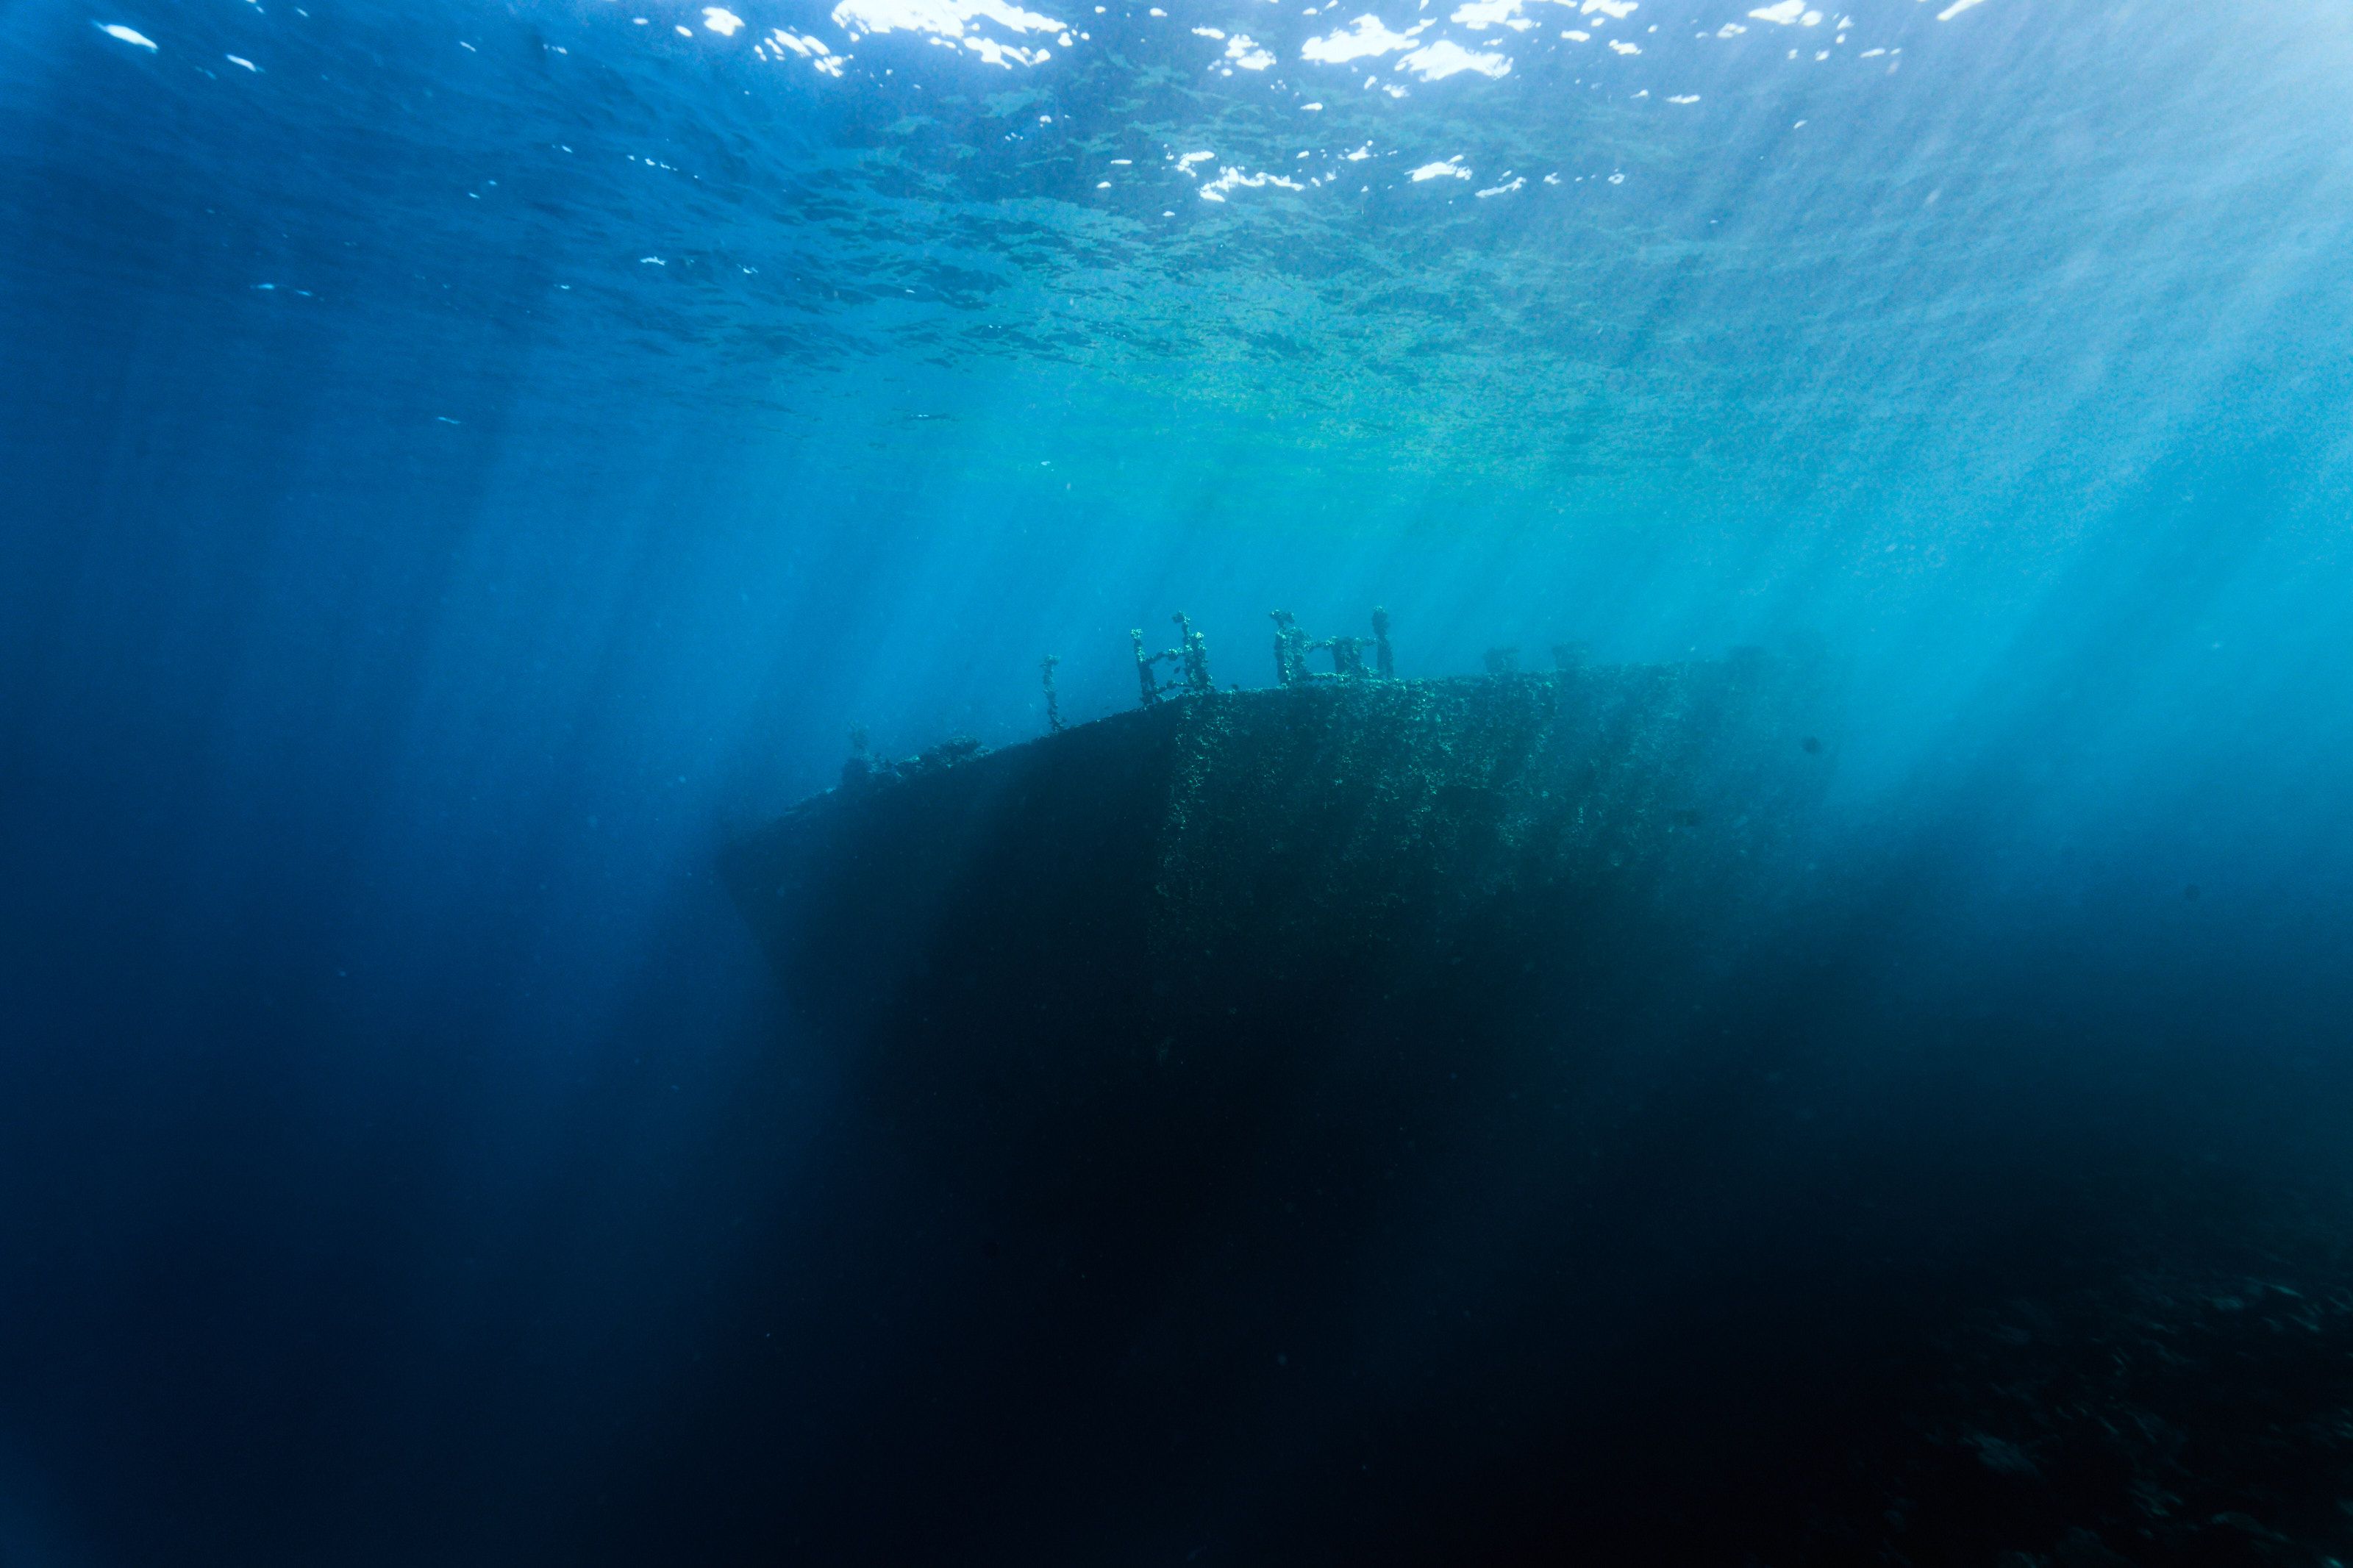 затонувший корабль, подводное фото, рекдайвинг, Павел Карчевский